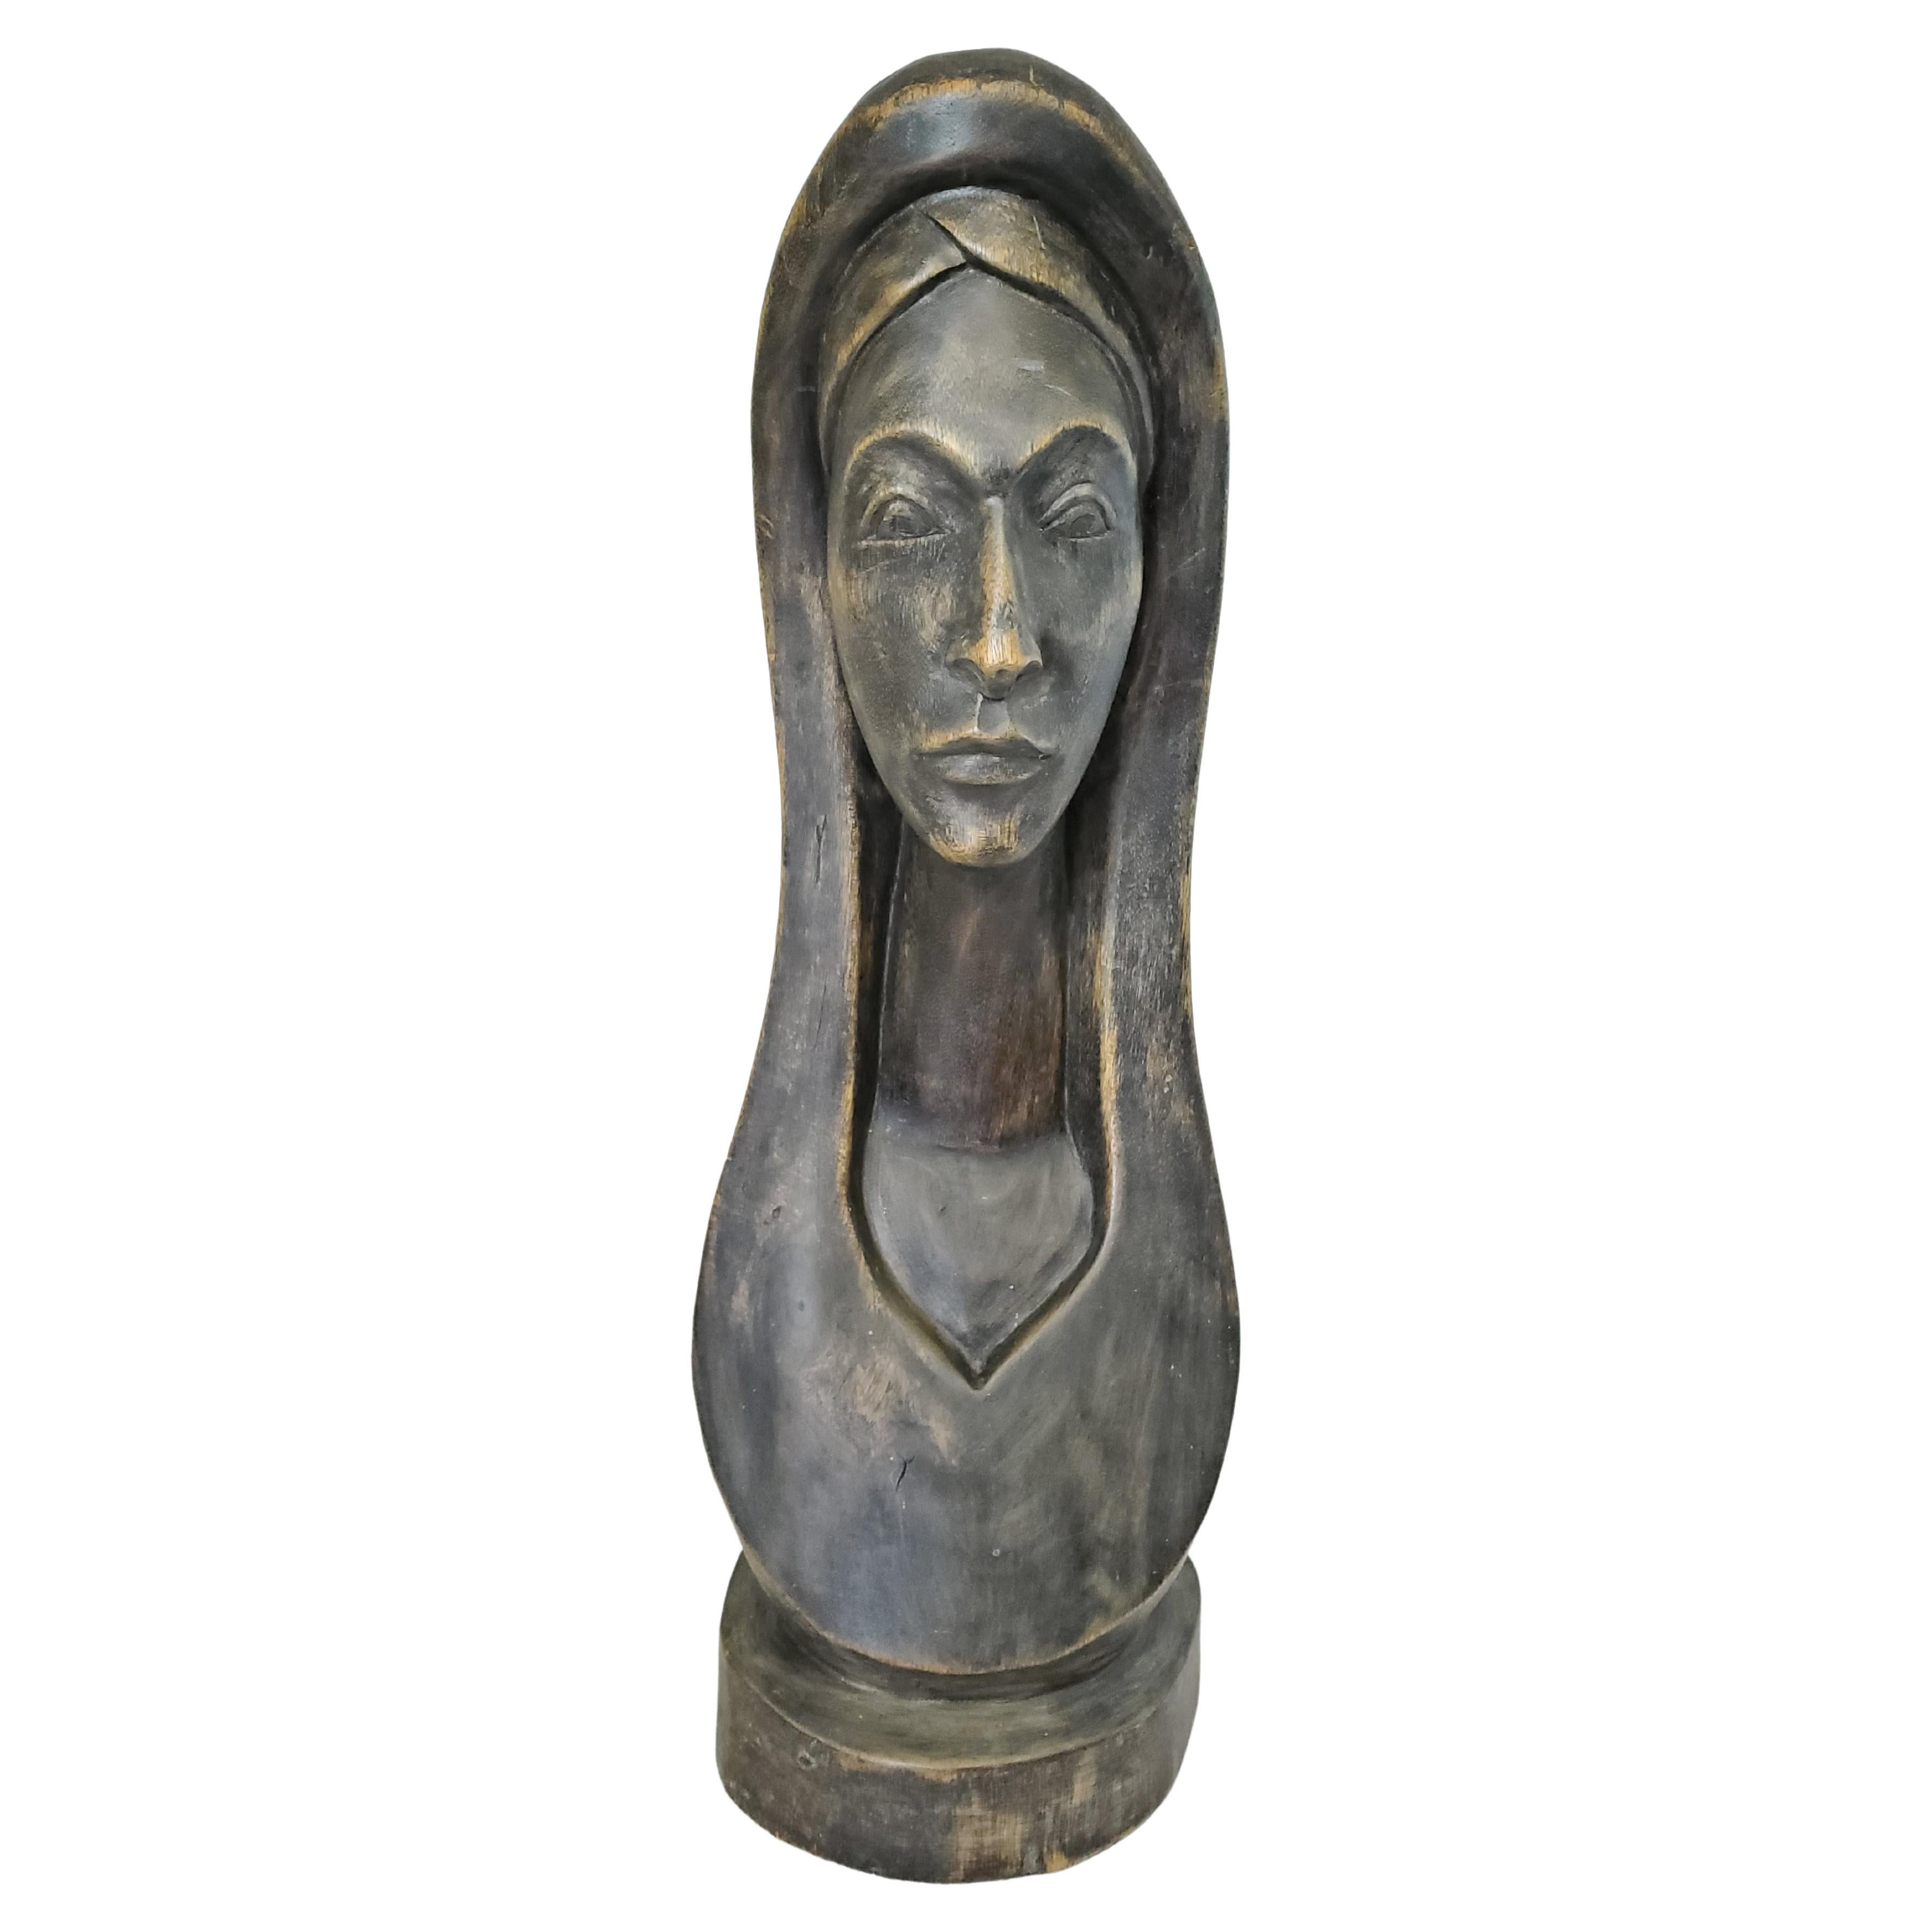 Diese Skulptur oder Büste aus bronziertem Holz ist wunderschön geschnitzt und vermittelt ein Gefühl der Gelassenheit. Interessanterweise stammt diese Holzskulptur aus Vaudreuil-Dorion, Quebec - einer ehemaligen französisch-katholischen Siedlung aus